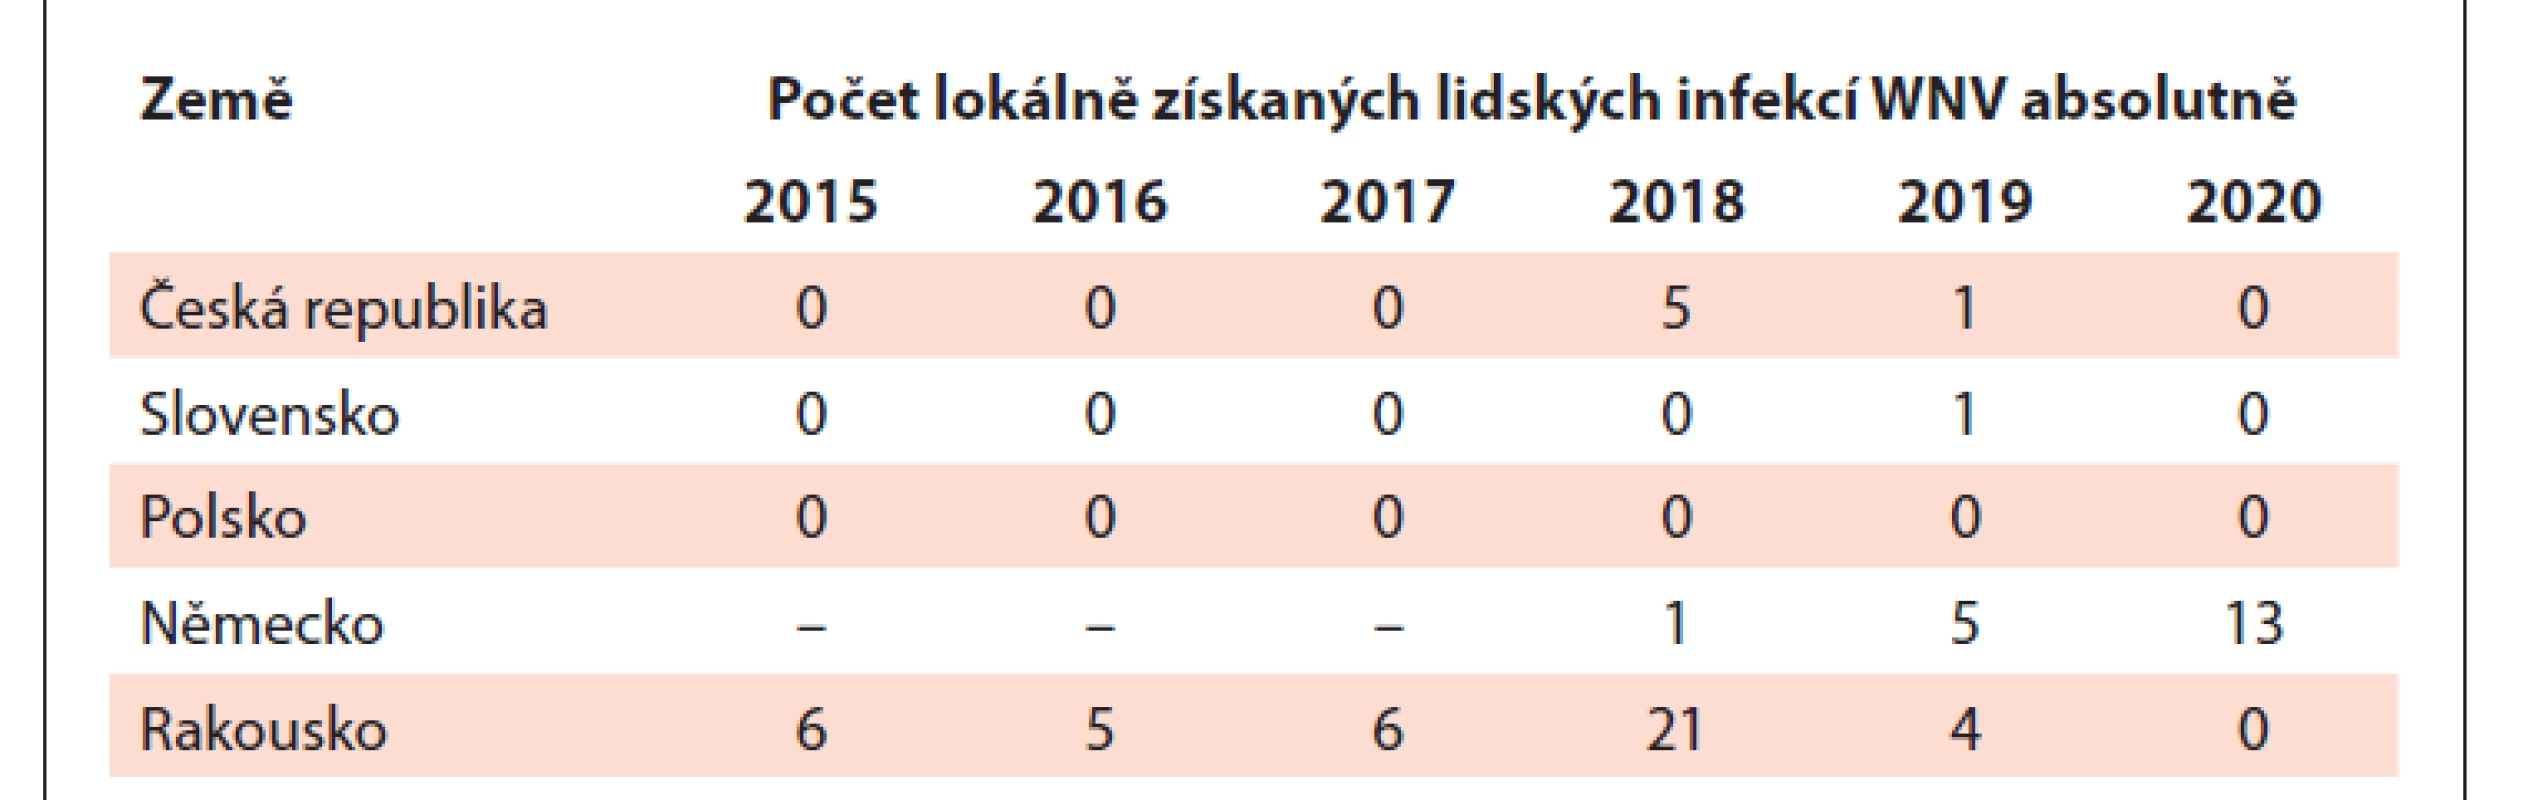 Výskyt lokálně získaných lidských infekcí WNV v České republice
a v sousedních zemích v období 2015–2020. Upraveno dle ECDC [29].